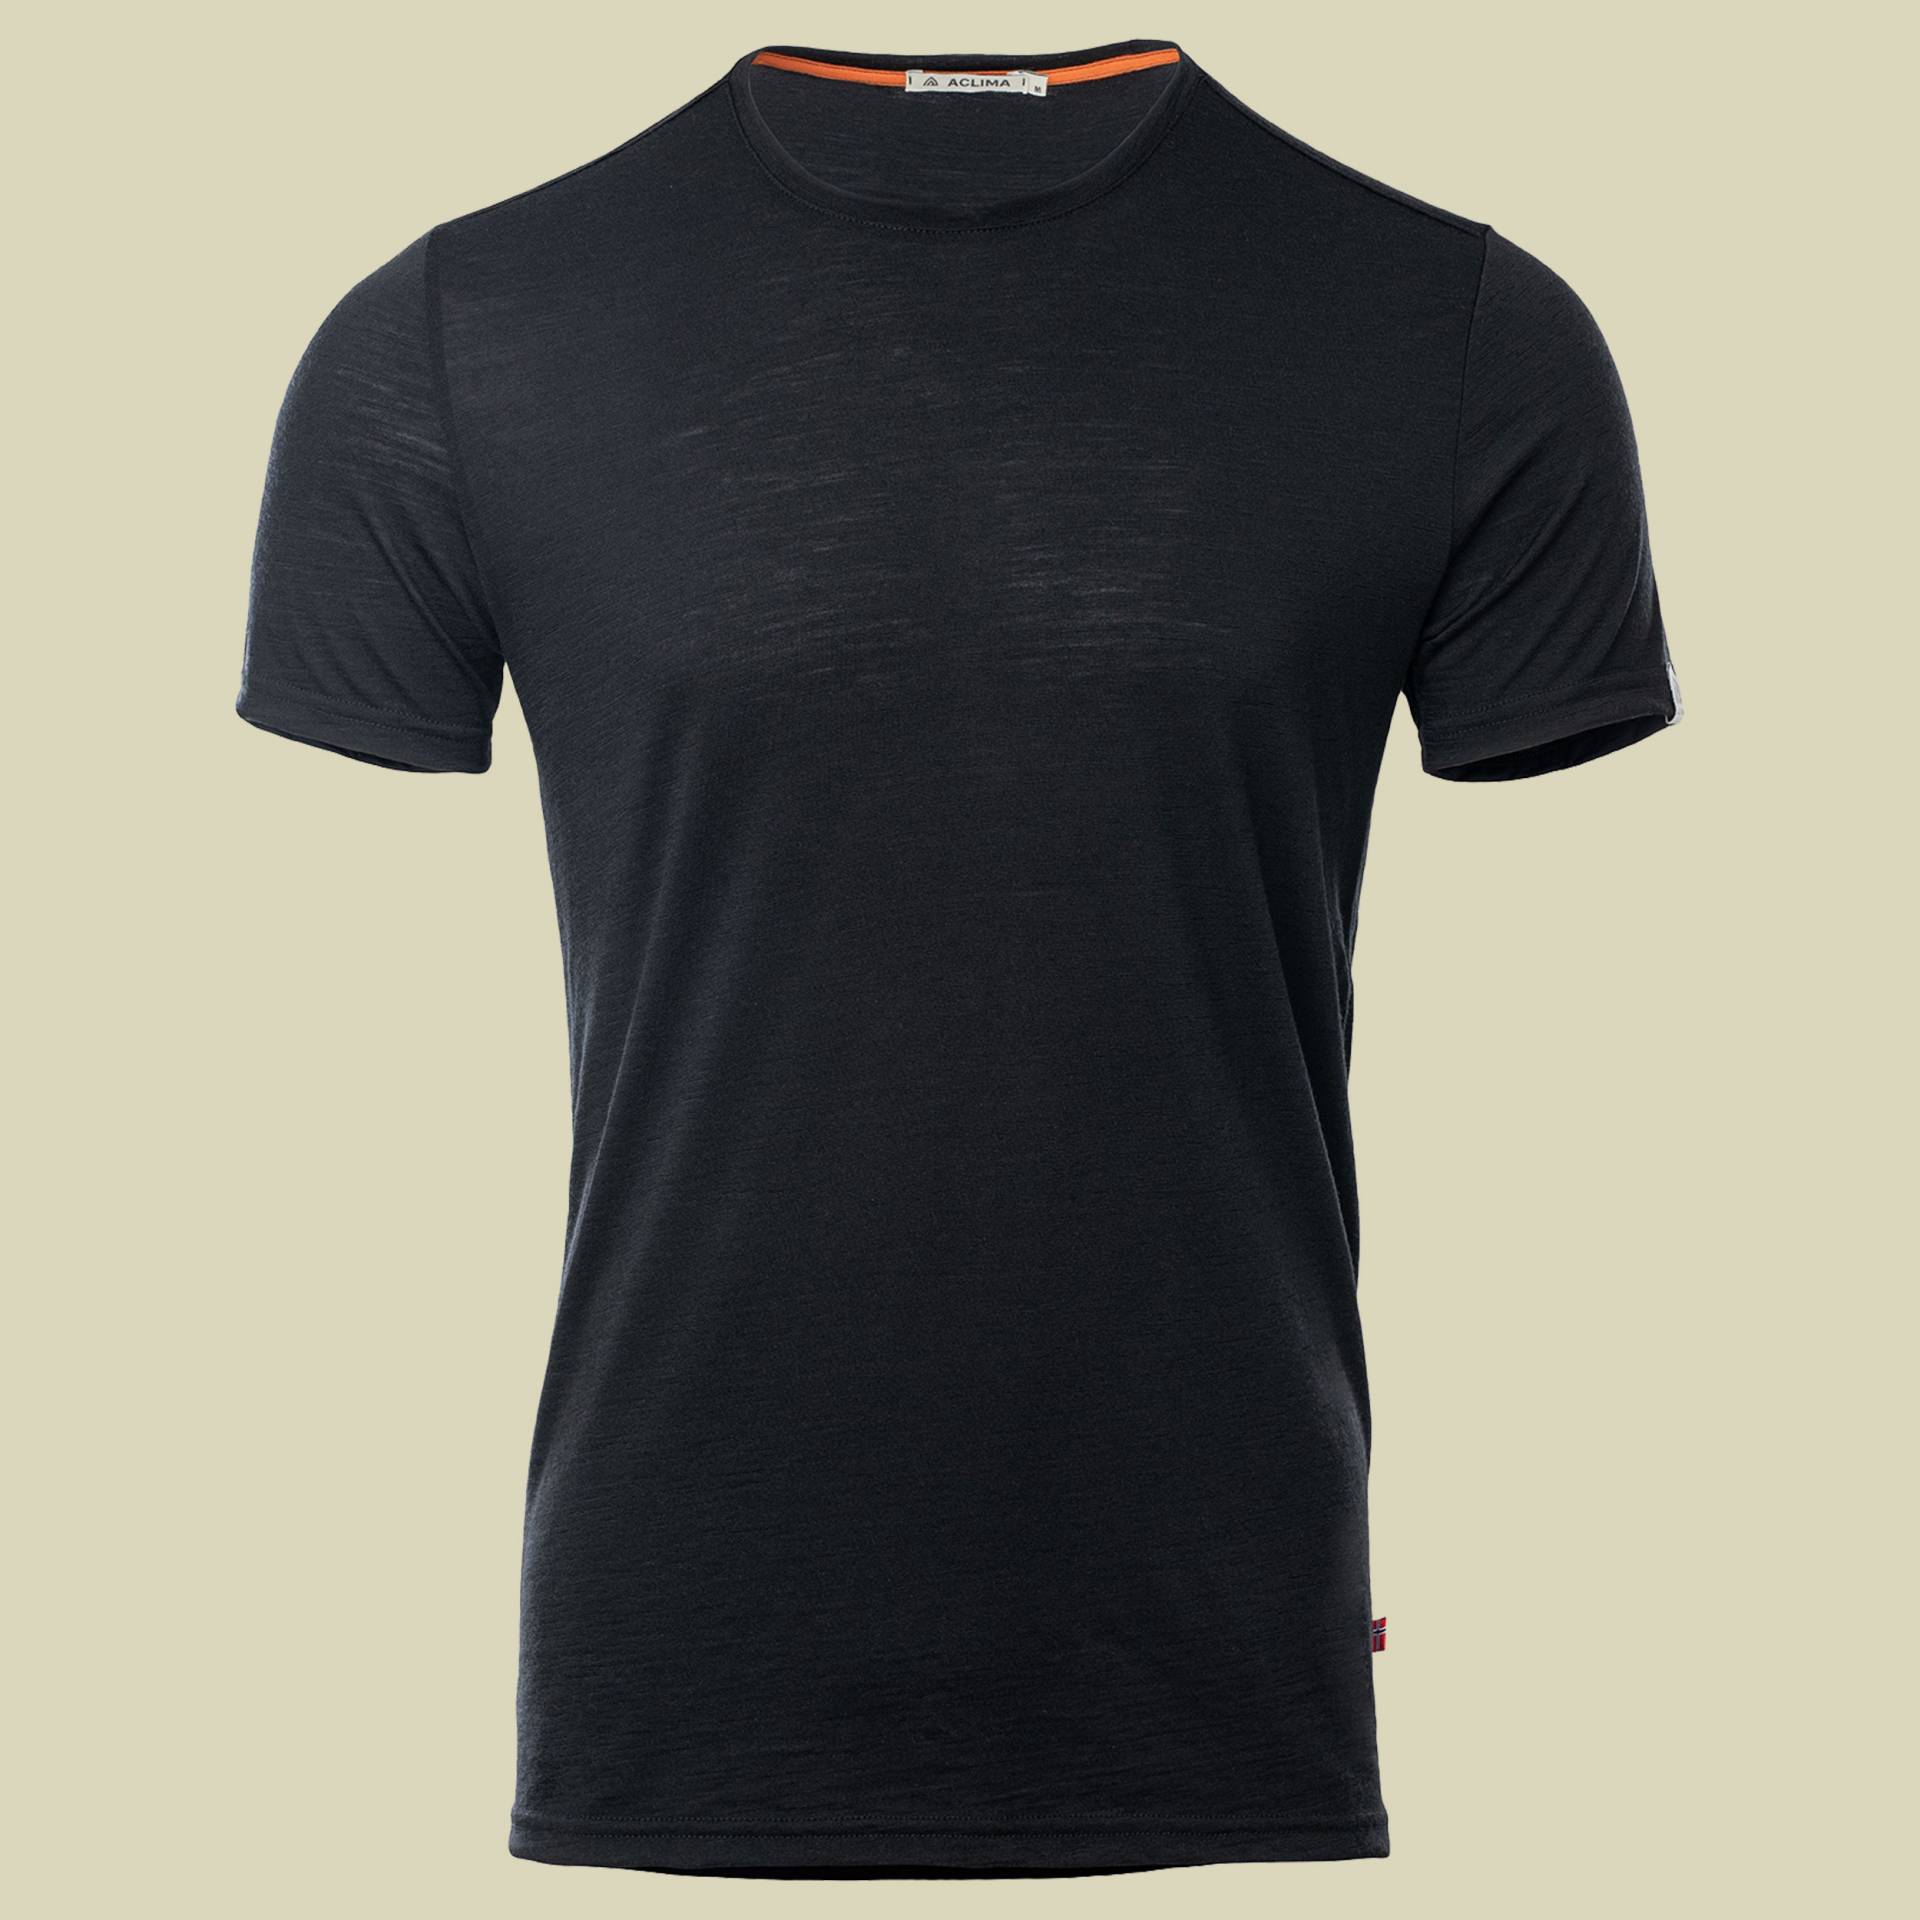 LightWool T-Shirt Men schwarz S - jet black von aclima